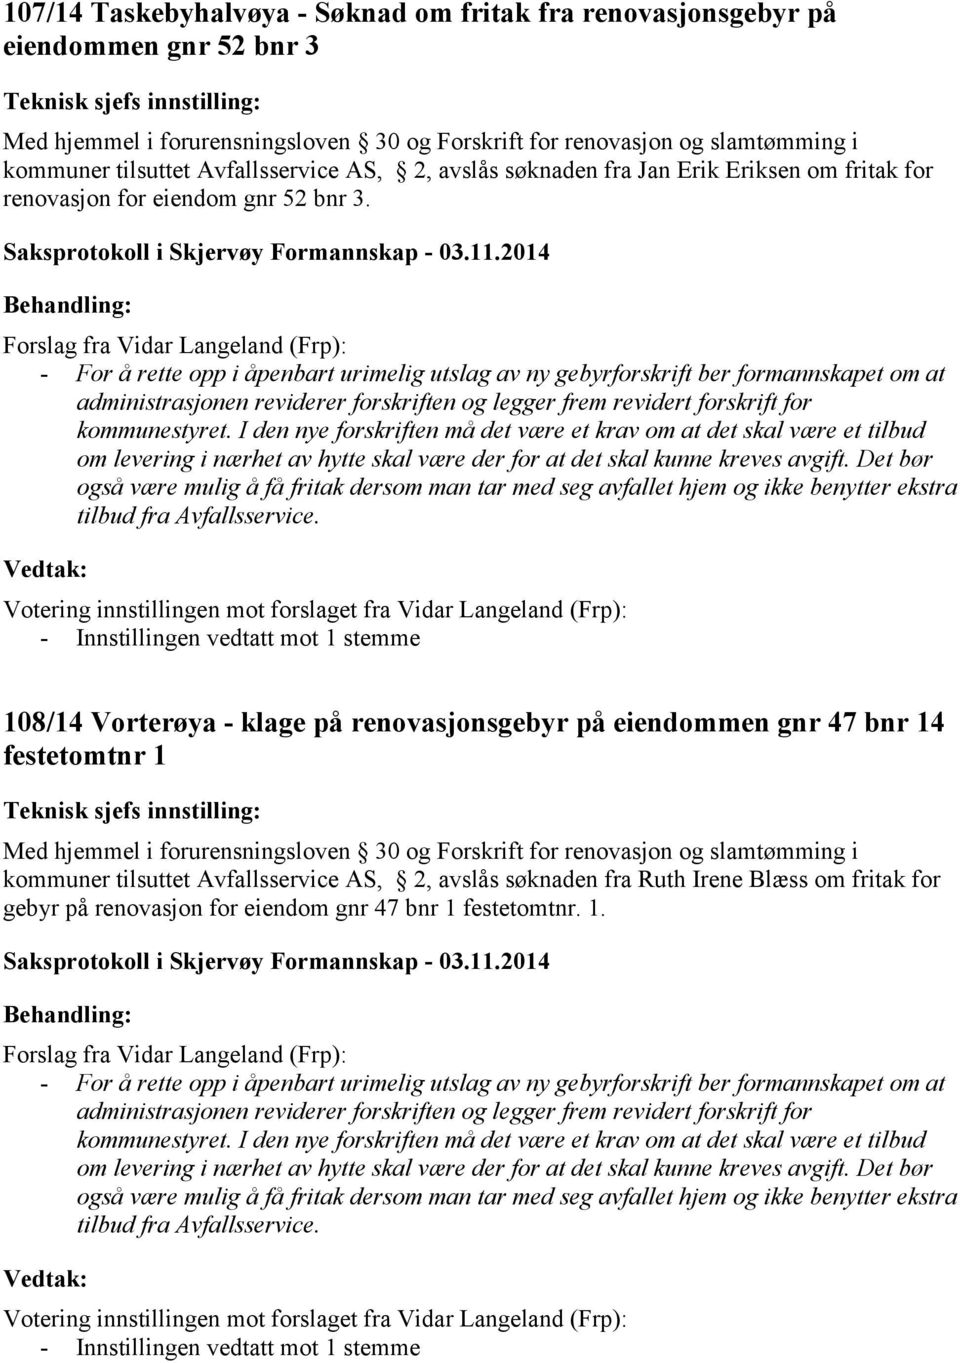 108/14 Vorterøya - klage på renovasjonsgebyr på eiendommen gnr 47 bnr 14 festetomtnr 1 kommuner tilsuttet